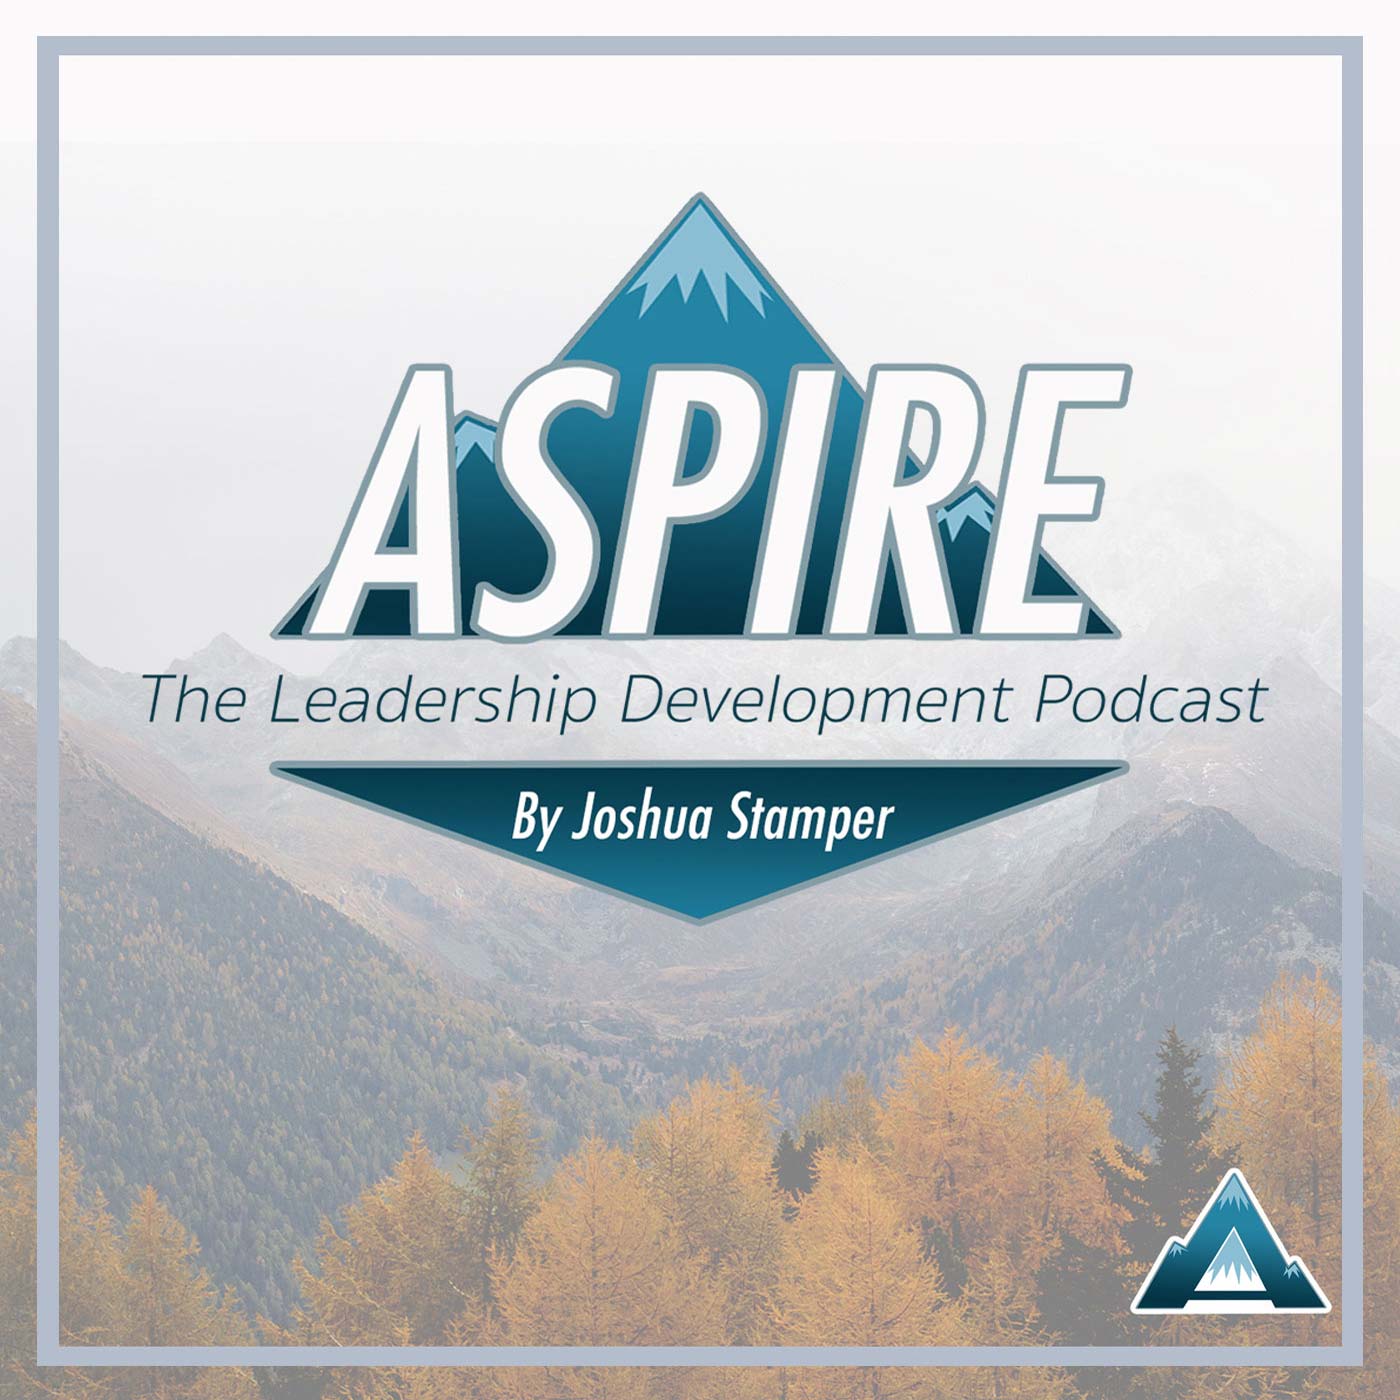 Artwork for podcast Aspire: The Leadership Development Podcast